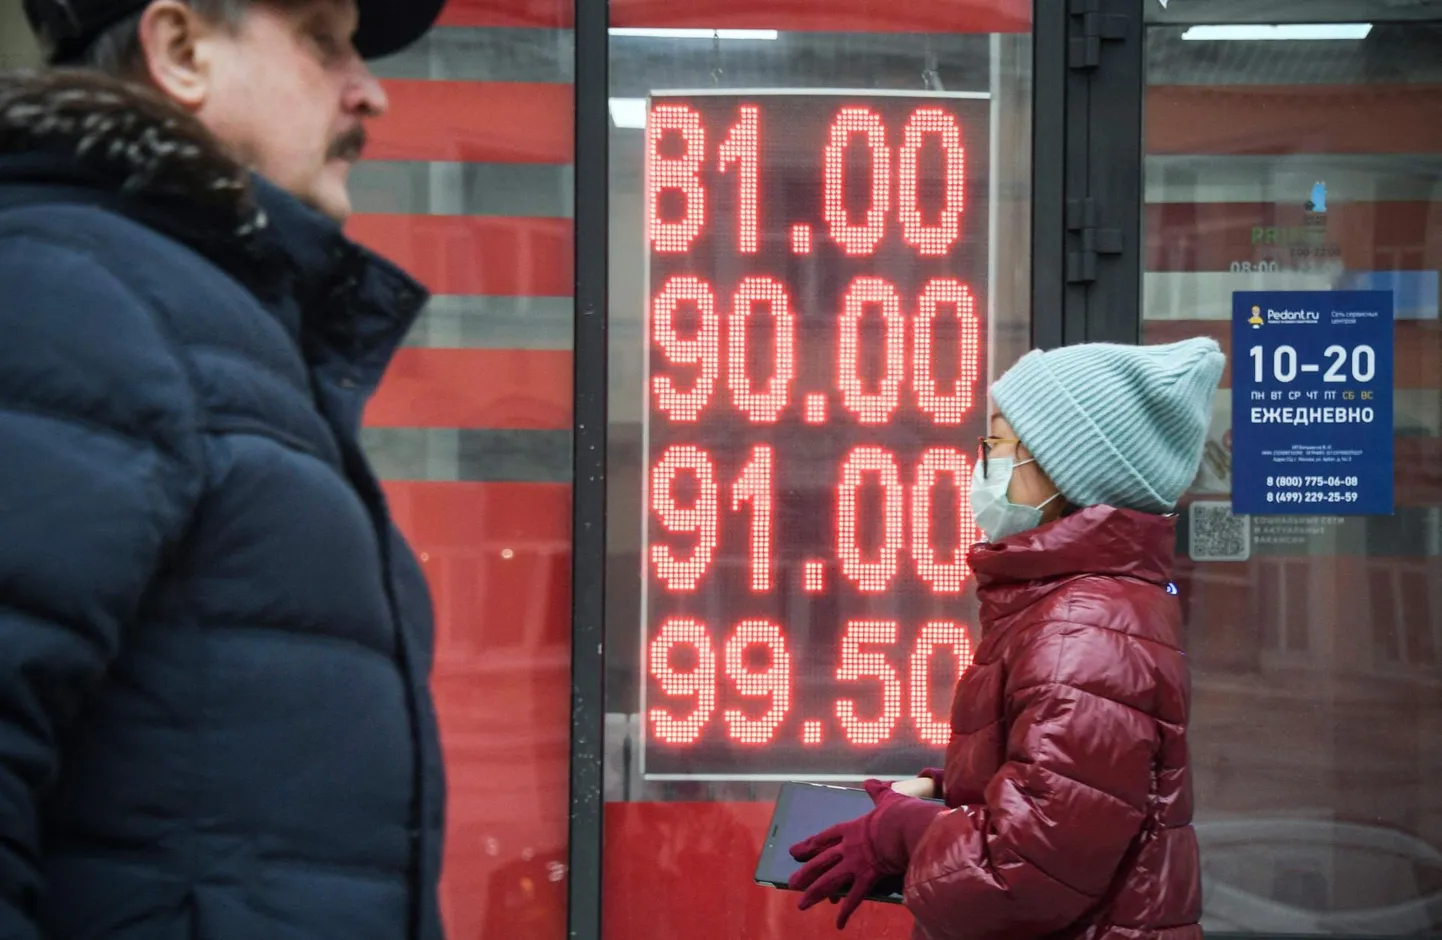 Valuutvahetustabel Moskvas.